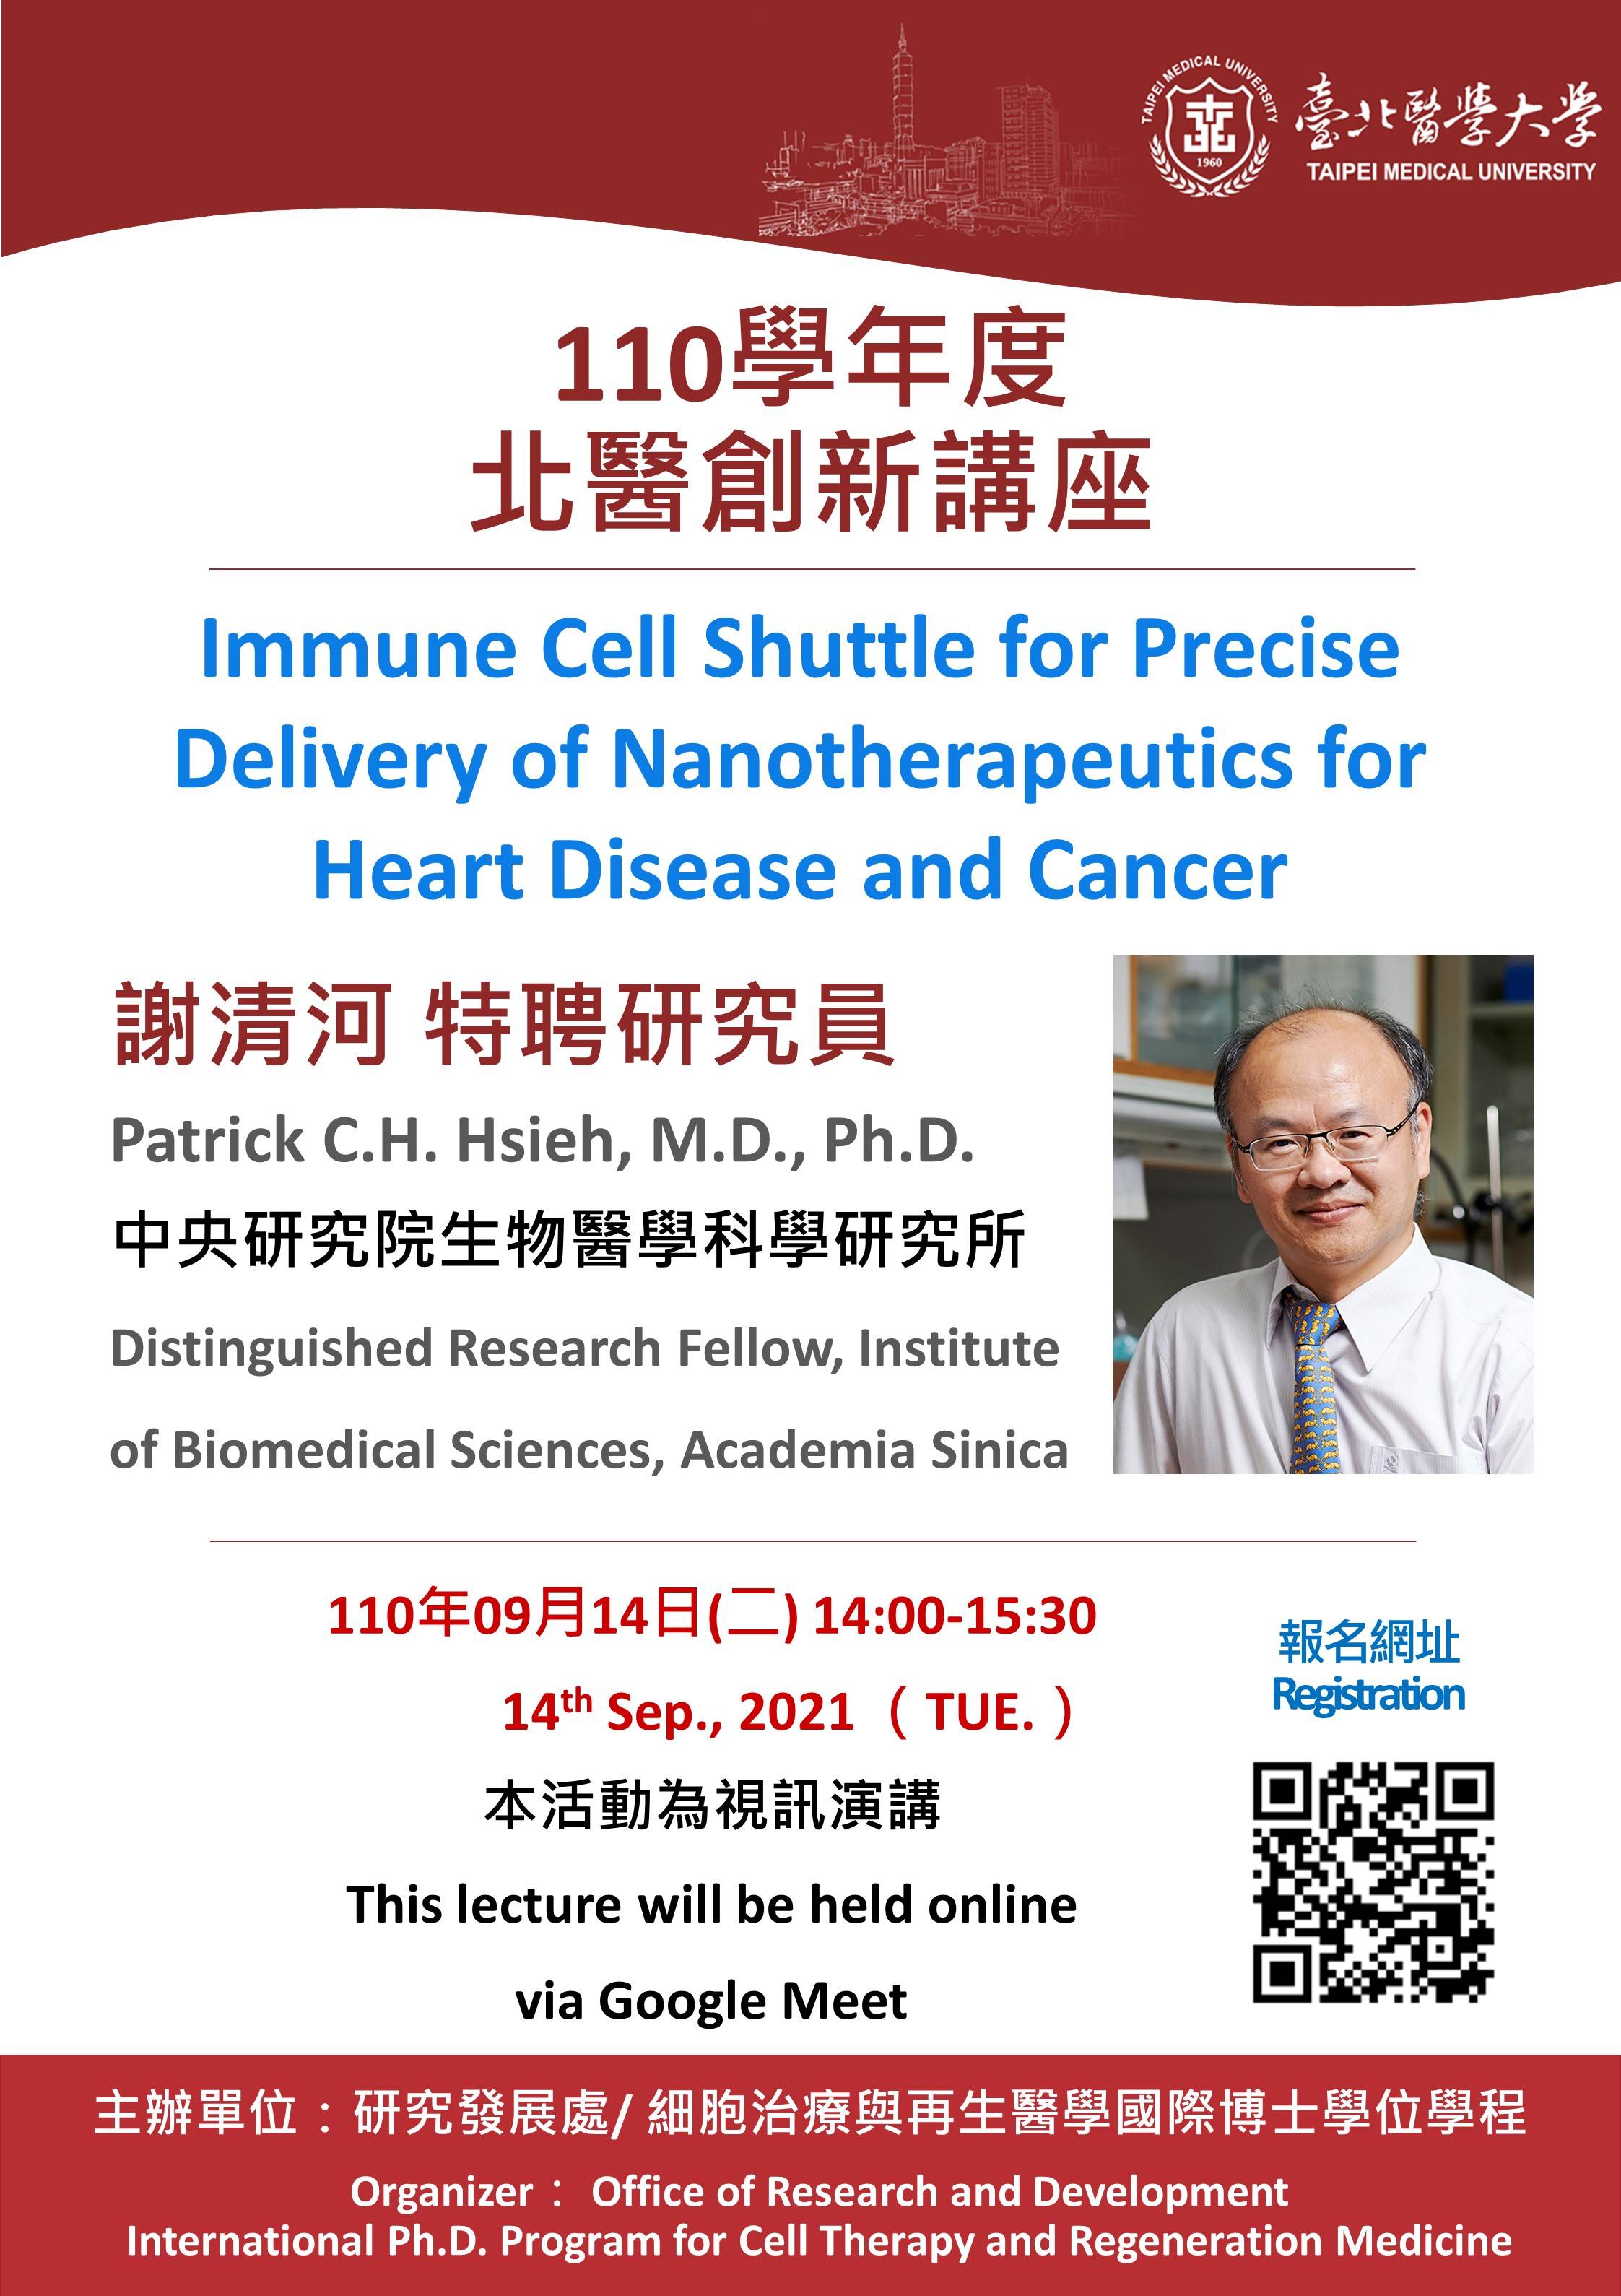 講題：Immune cell shuttle for precise delivery of nanotherapeutics for heart disease and cancer
講者：謝清河特聘研究員
日期：110年09月14日（二）14:00-15:30